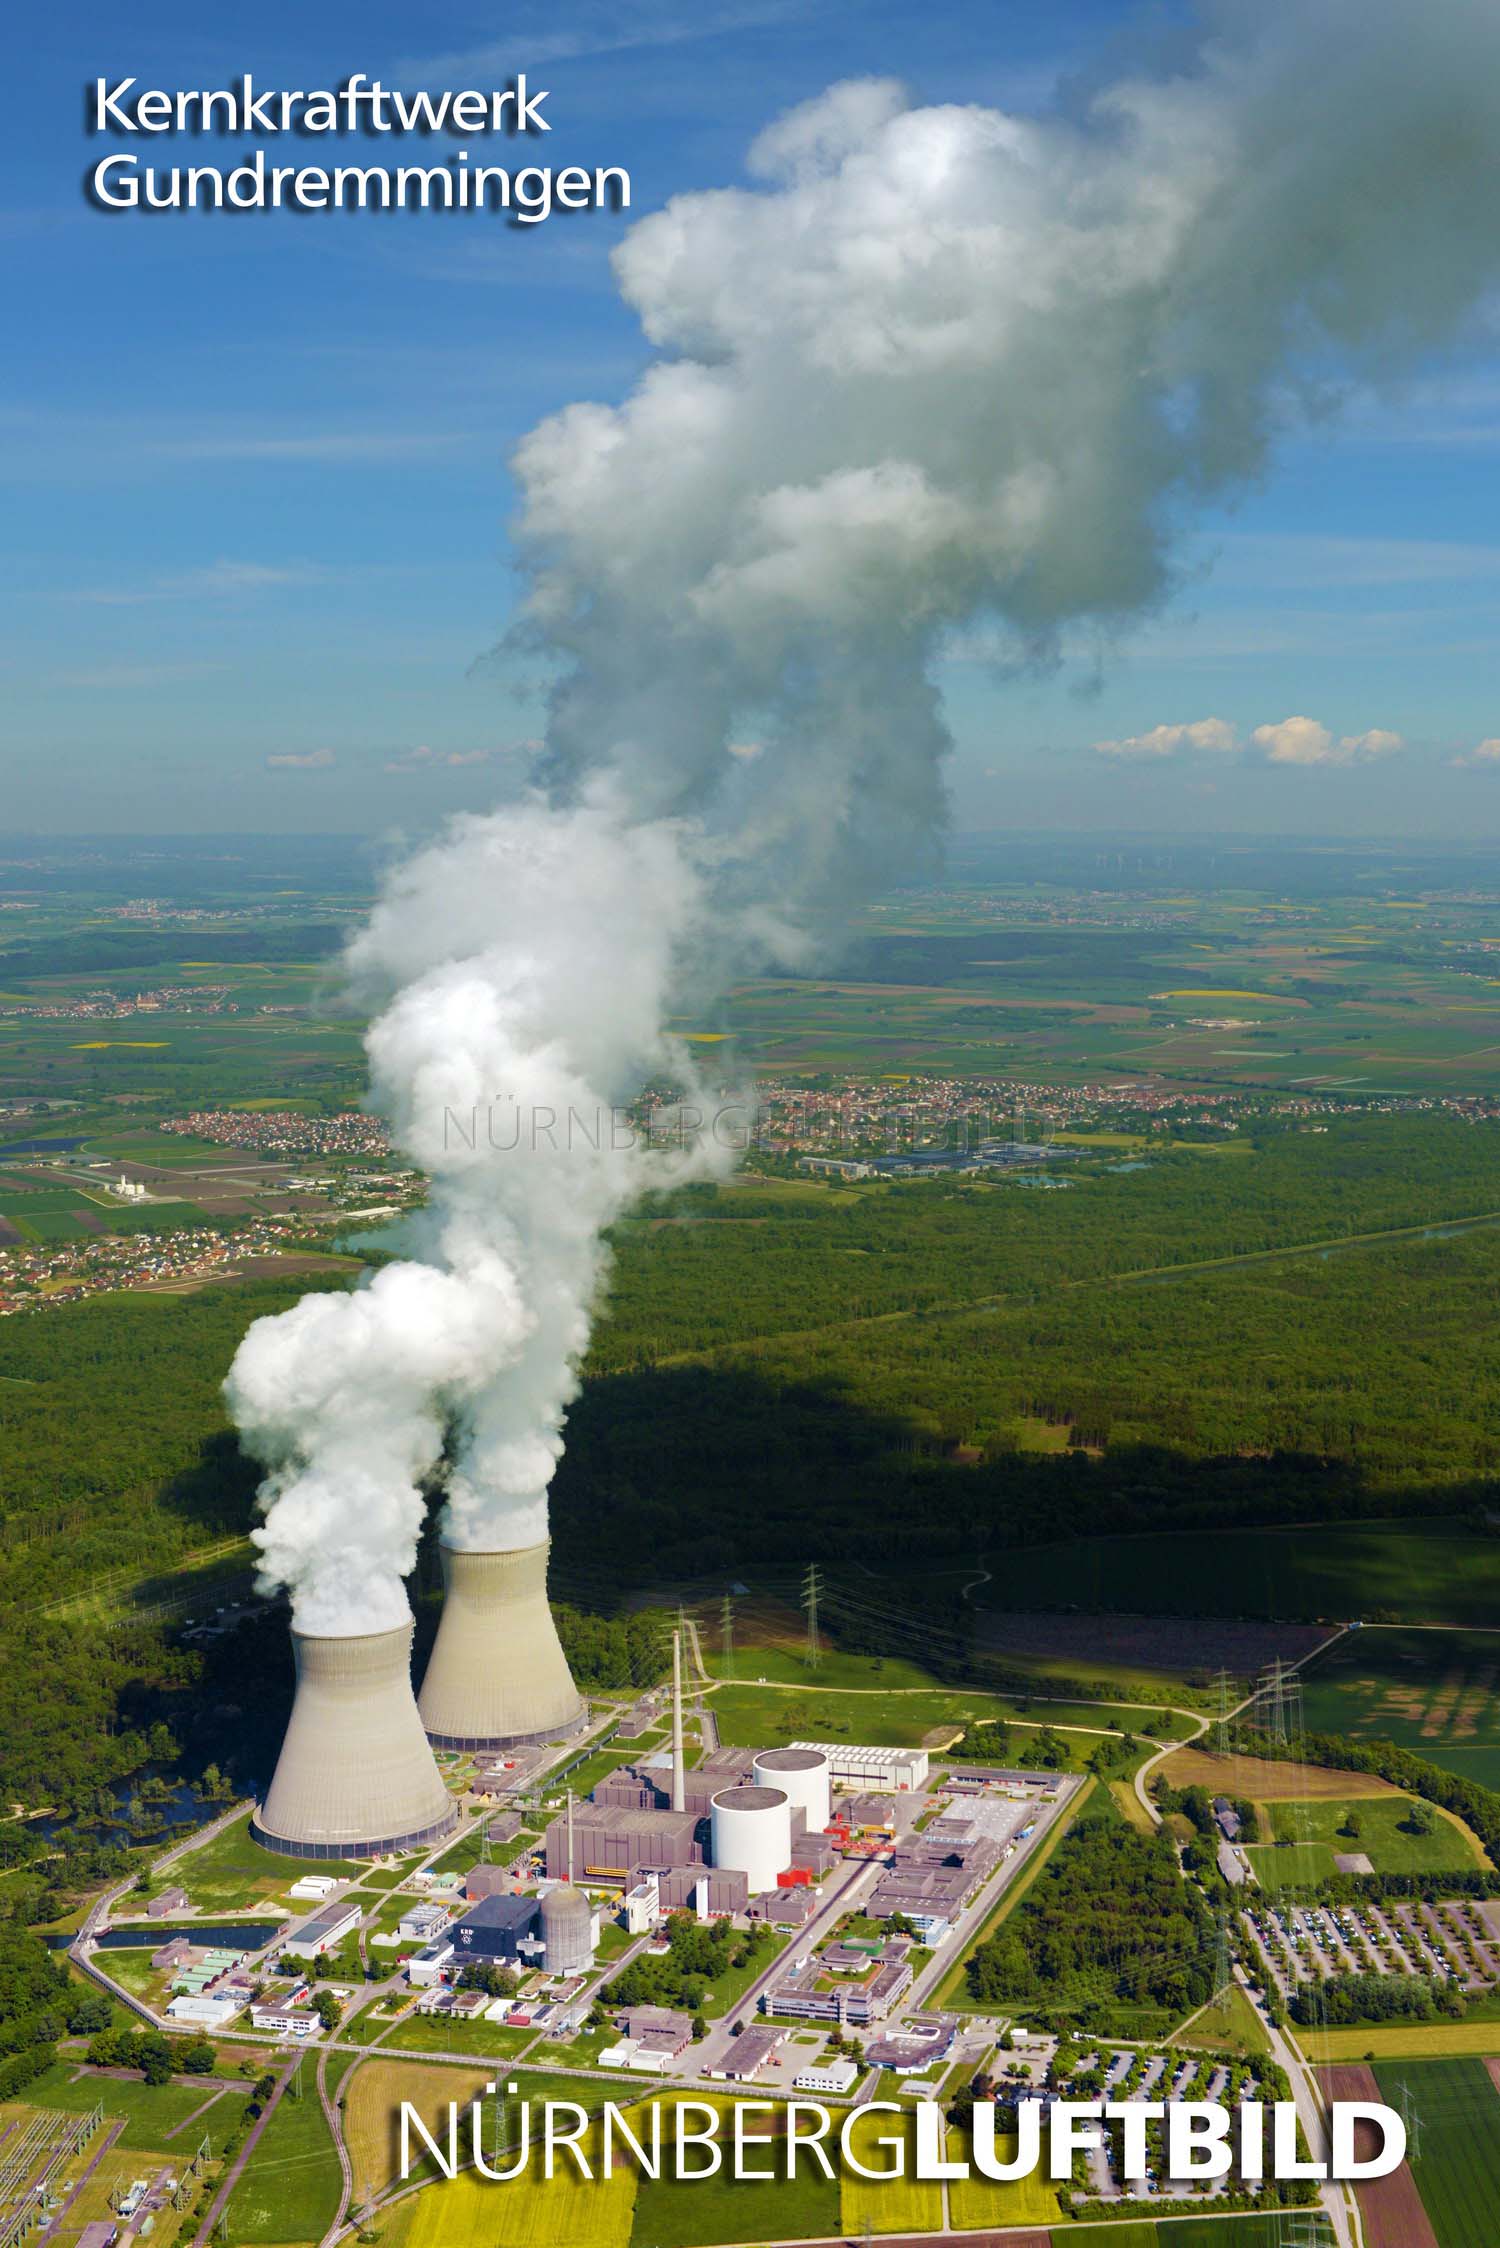 Kernkraftwerk Gundremmingen von Südosten, Luftaufnahme